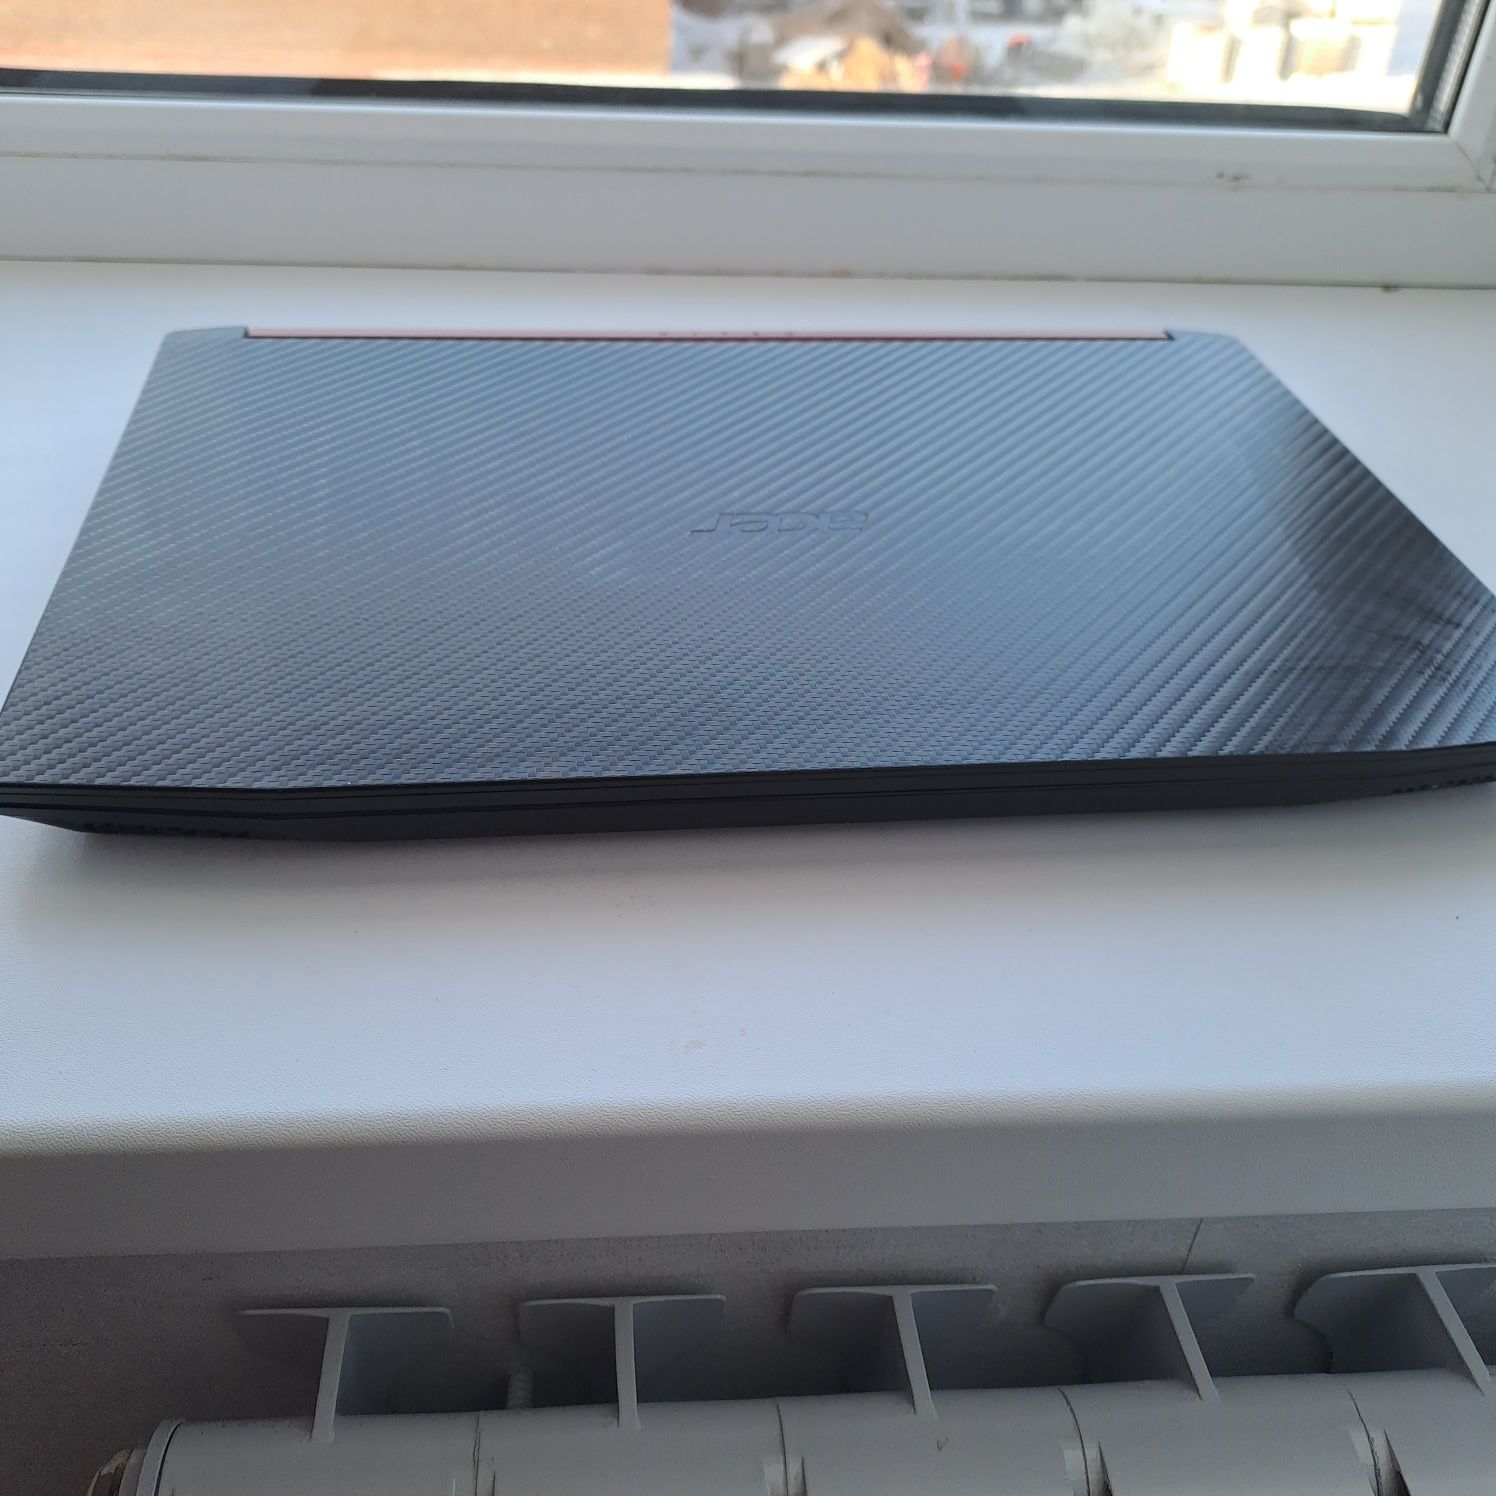 Ноутбук Acer NITRO 5